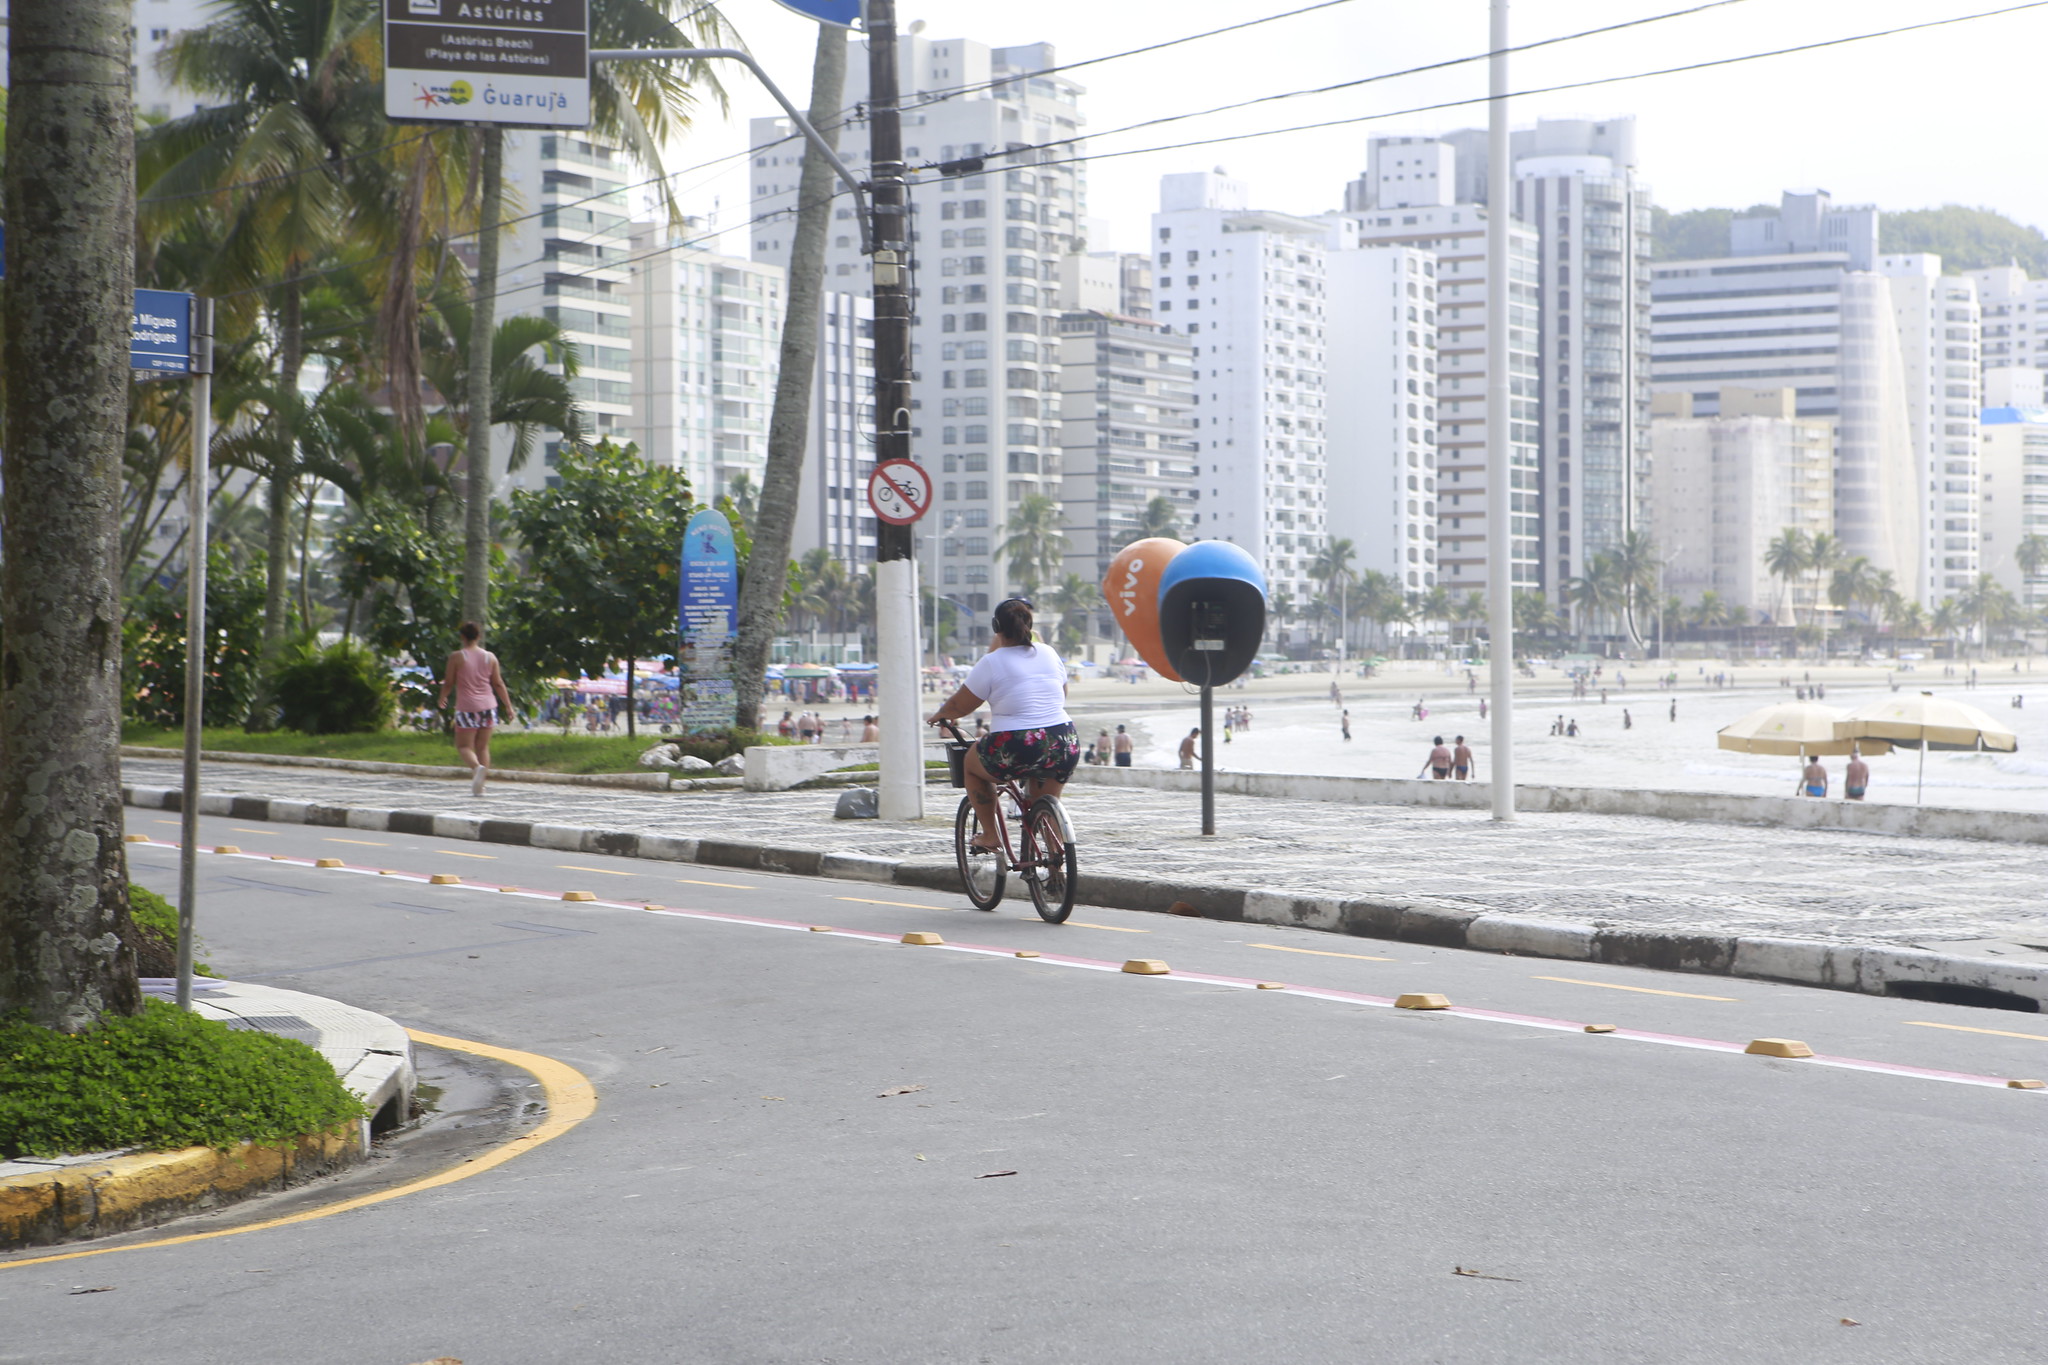 Guarujá reduz em 25% o número de mortes de ciclistas